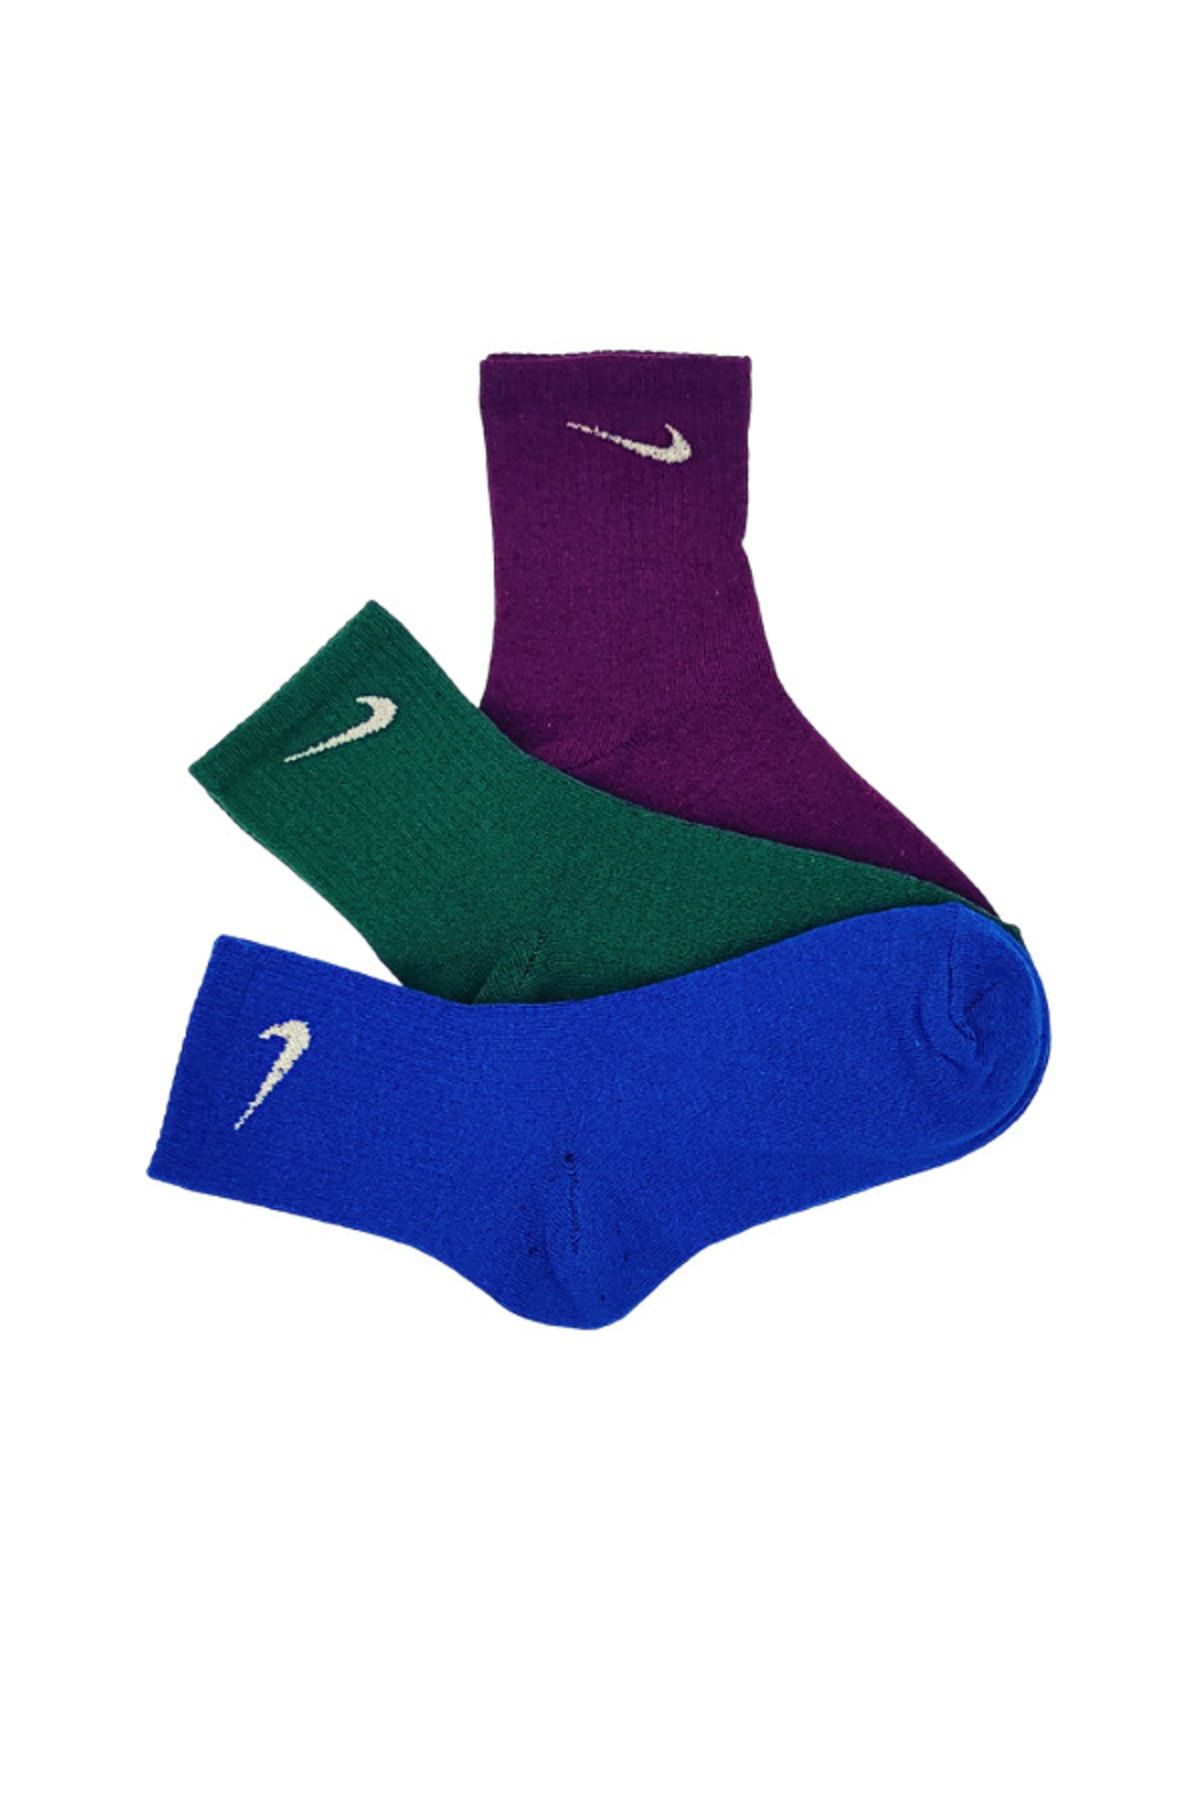 Genel Markalar 3'lü Unisex Mavi Mor Yeşil Antrenman Spor Tenis Futbol Basketbol Koşu Soket Çorap Seti